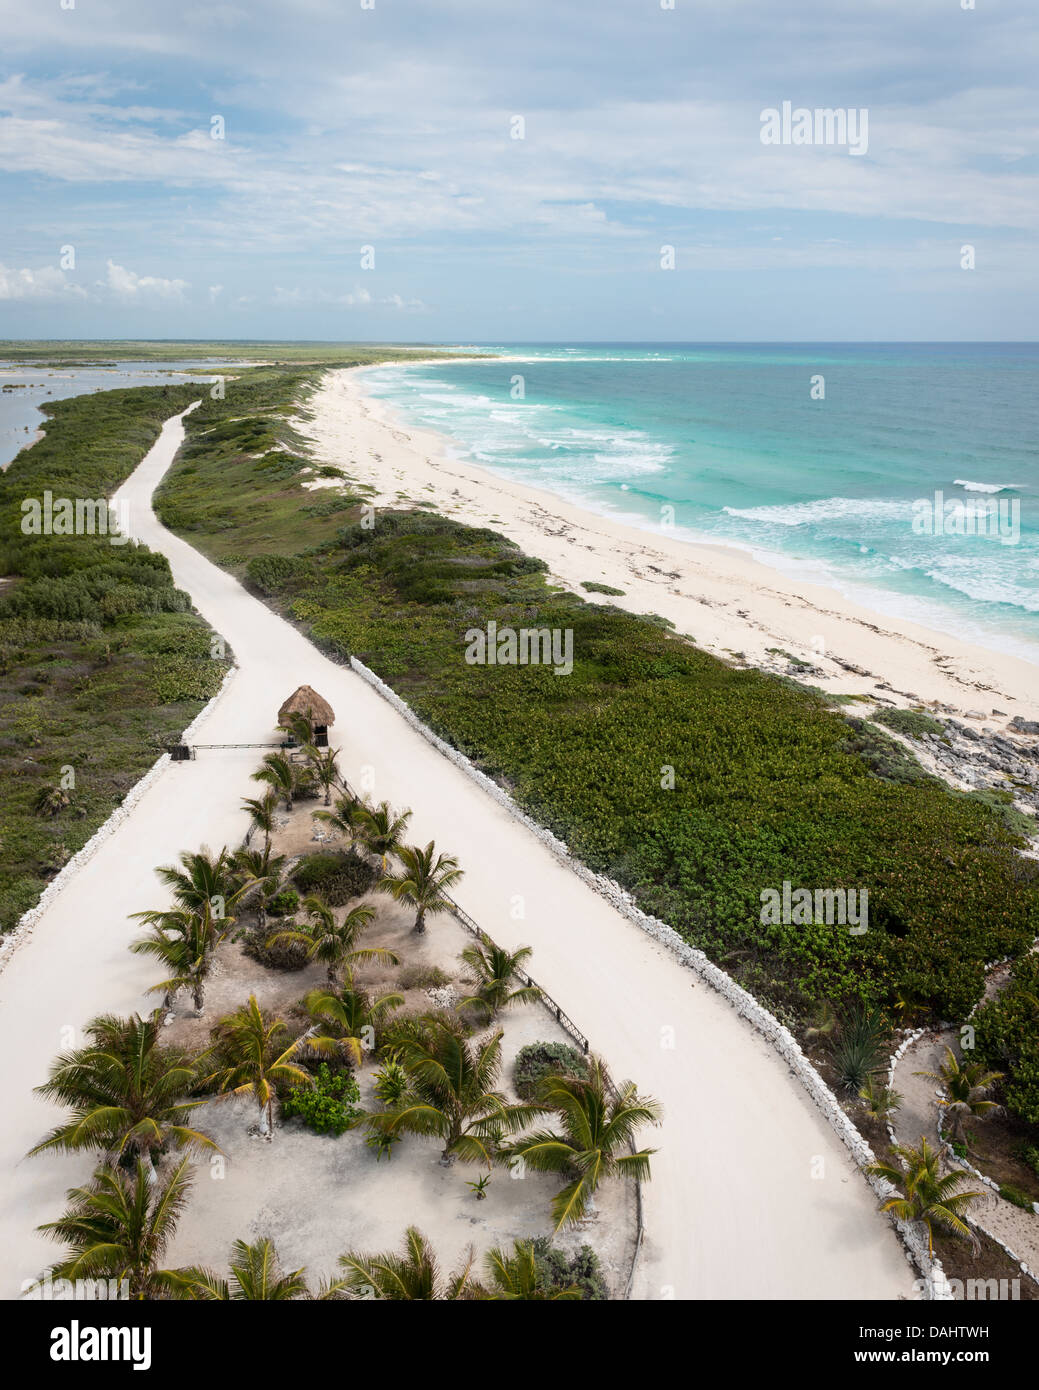 La fourche de la route sur une plage à Cozumel, Mexique, prises à partir de Punta Celarain Lighthouse Banque D'Images